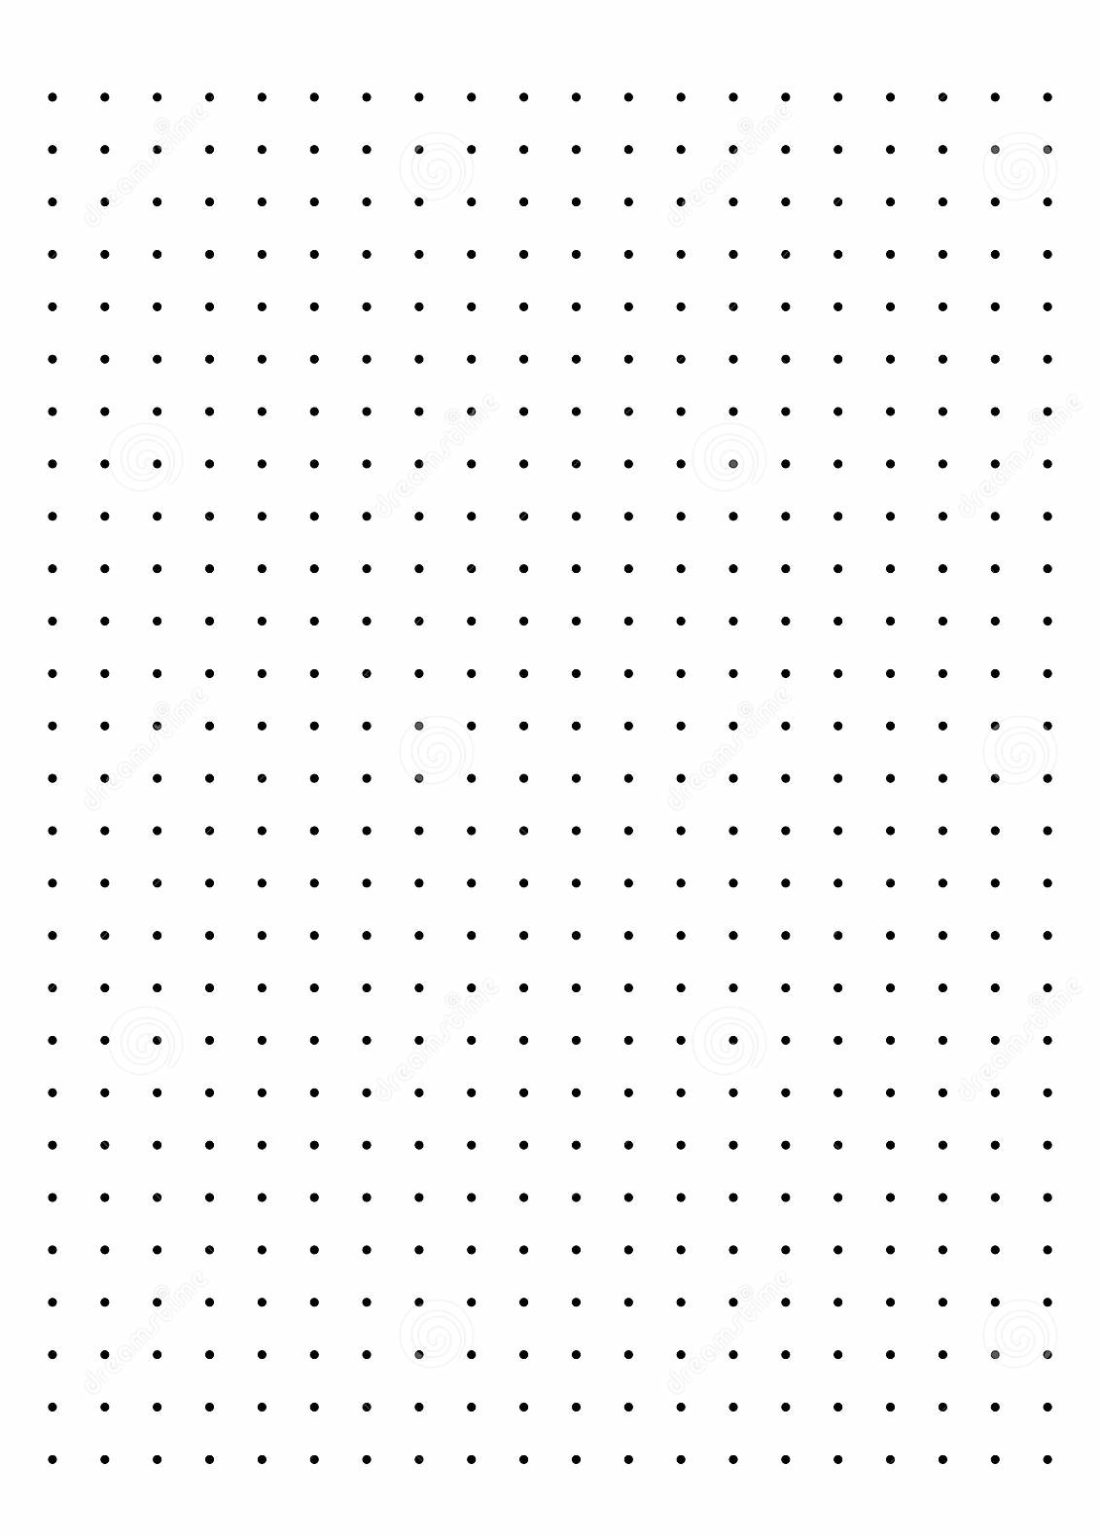 Free Printable Dot Paper or Dot Graph Template PDF